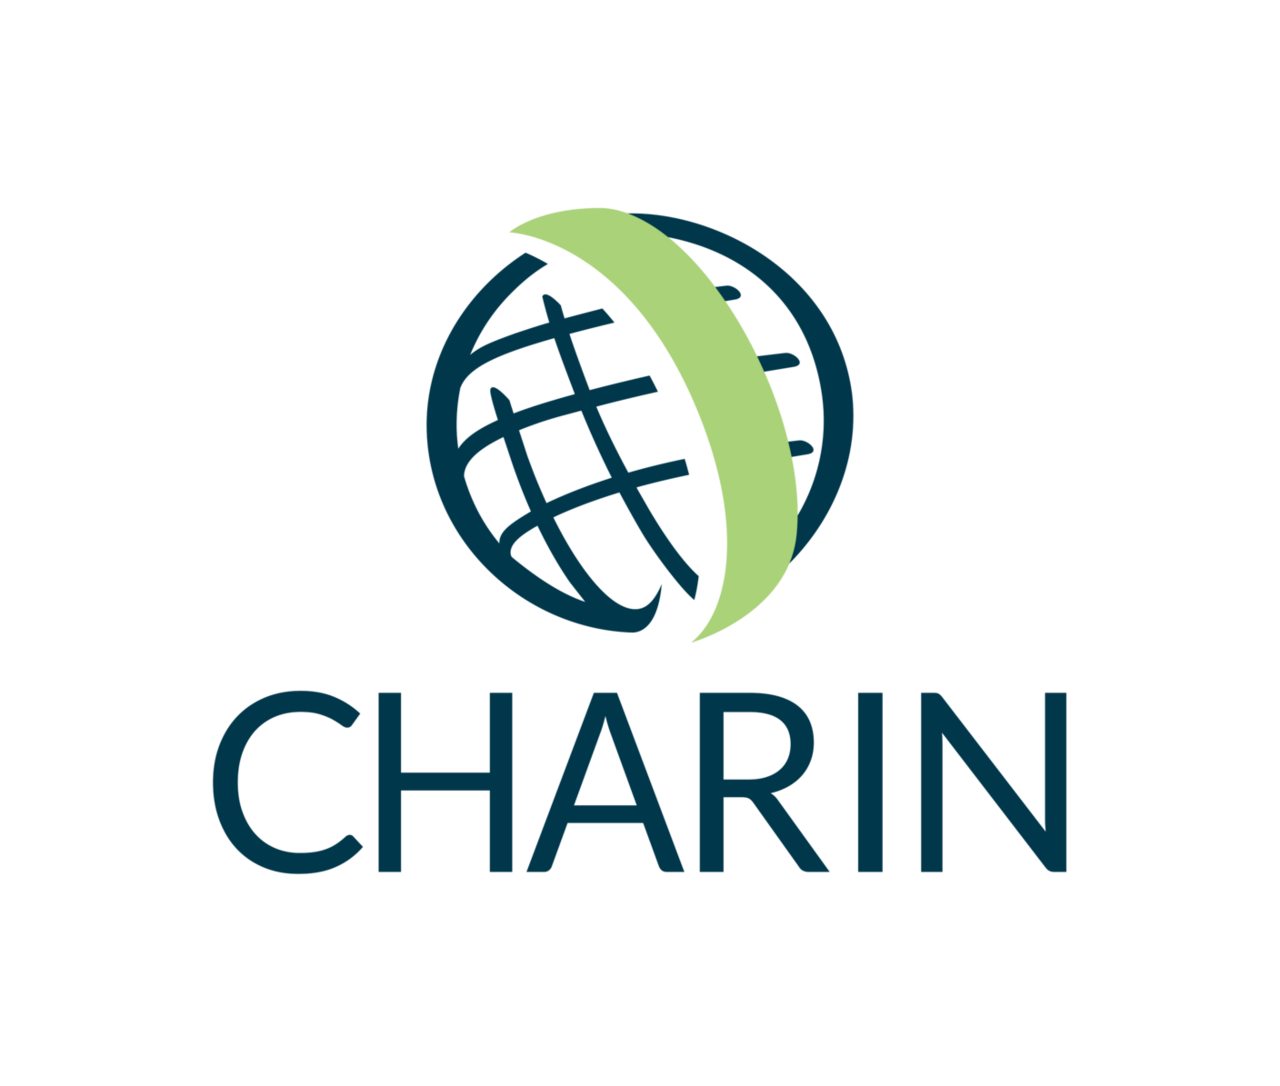 CharIN intensifies activities in Asia